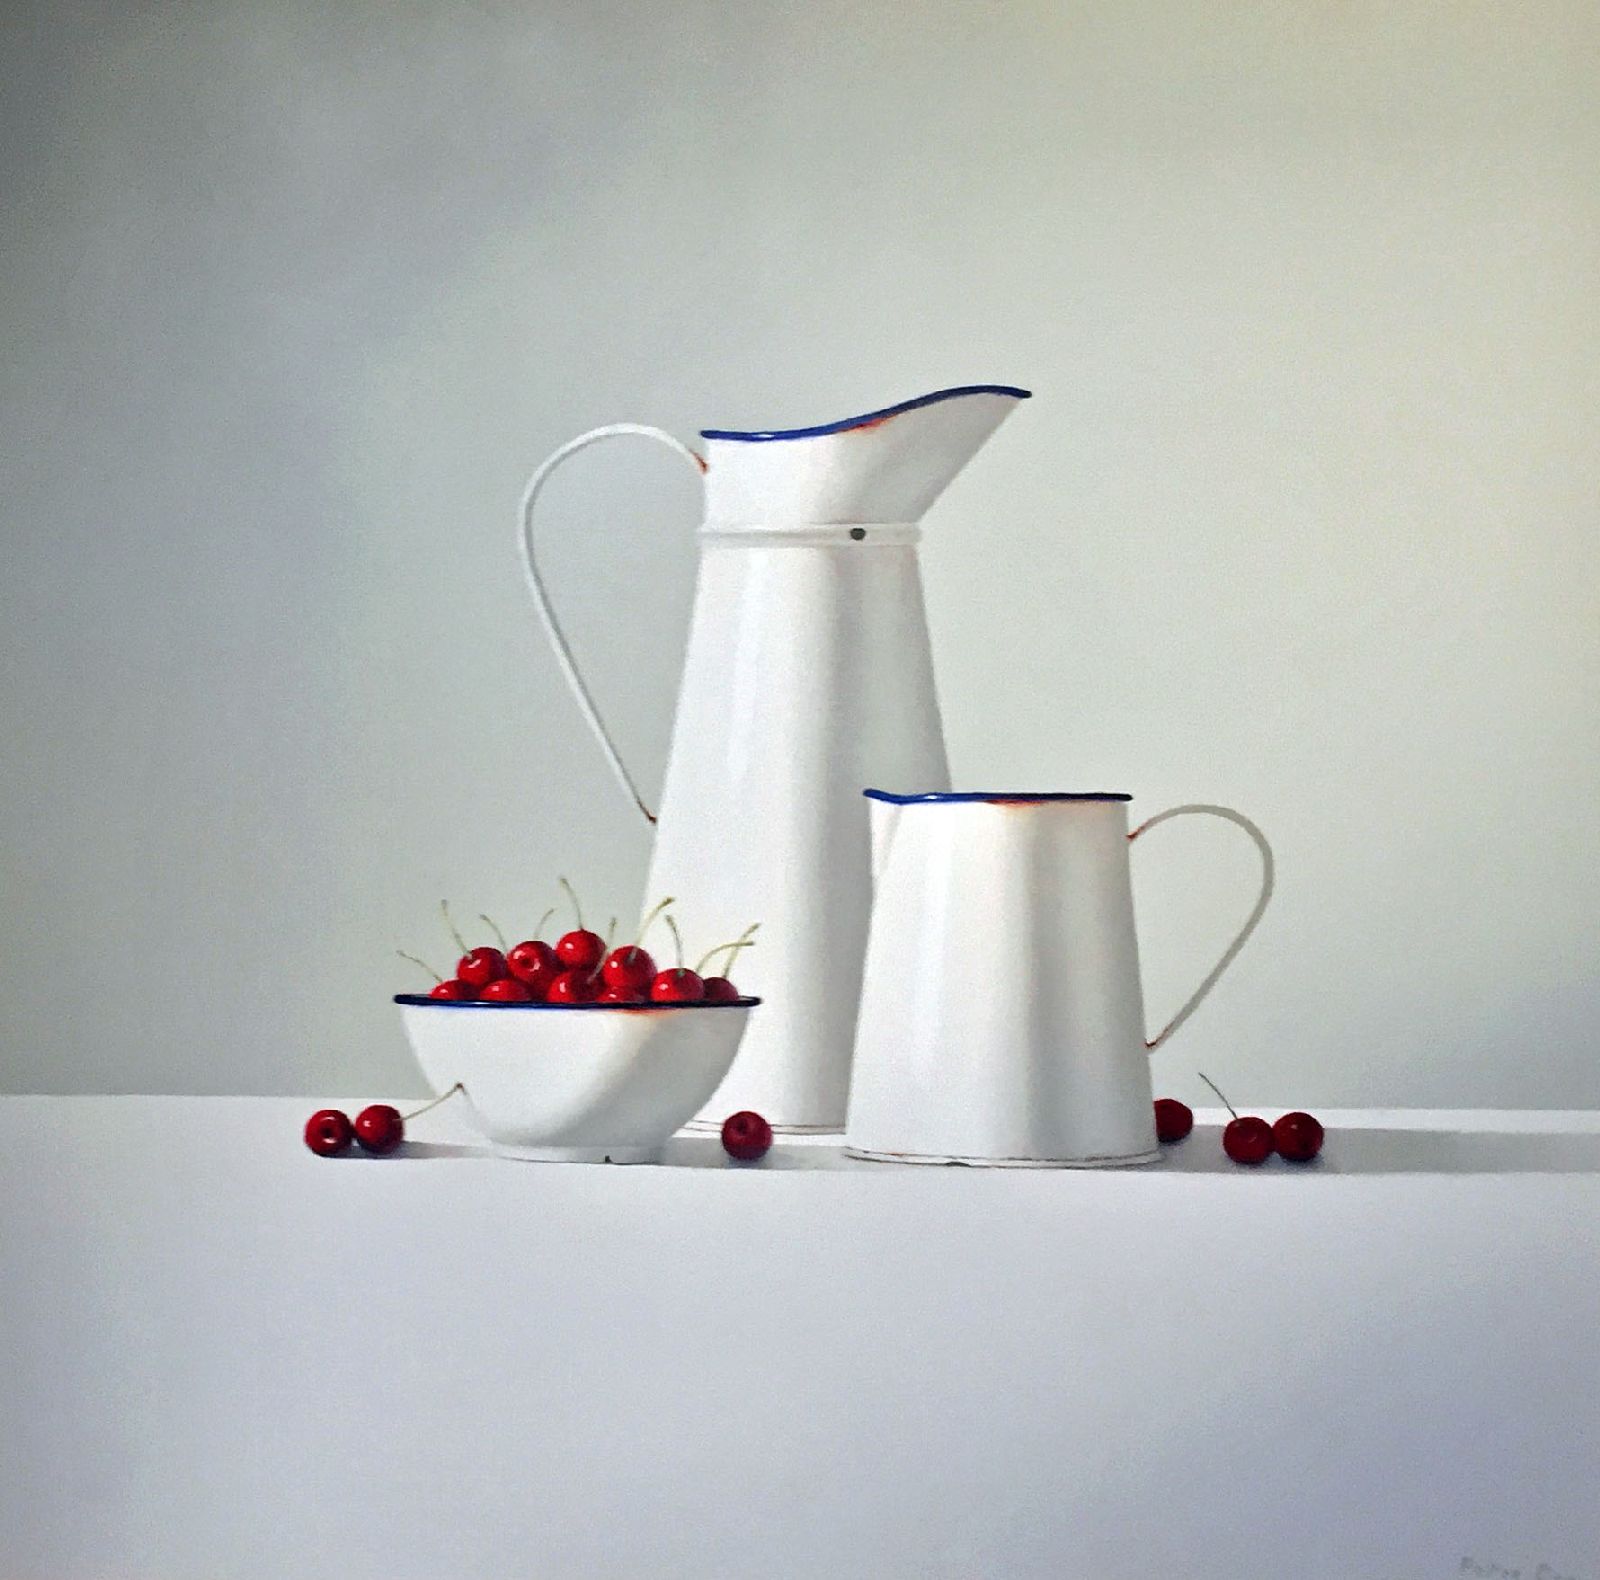 Red Cherries with Vintage Enamelware  by Peter Dee